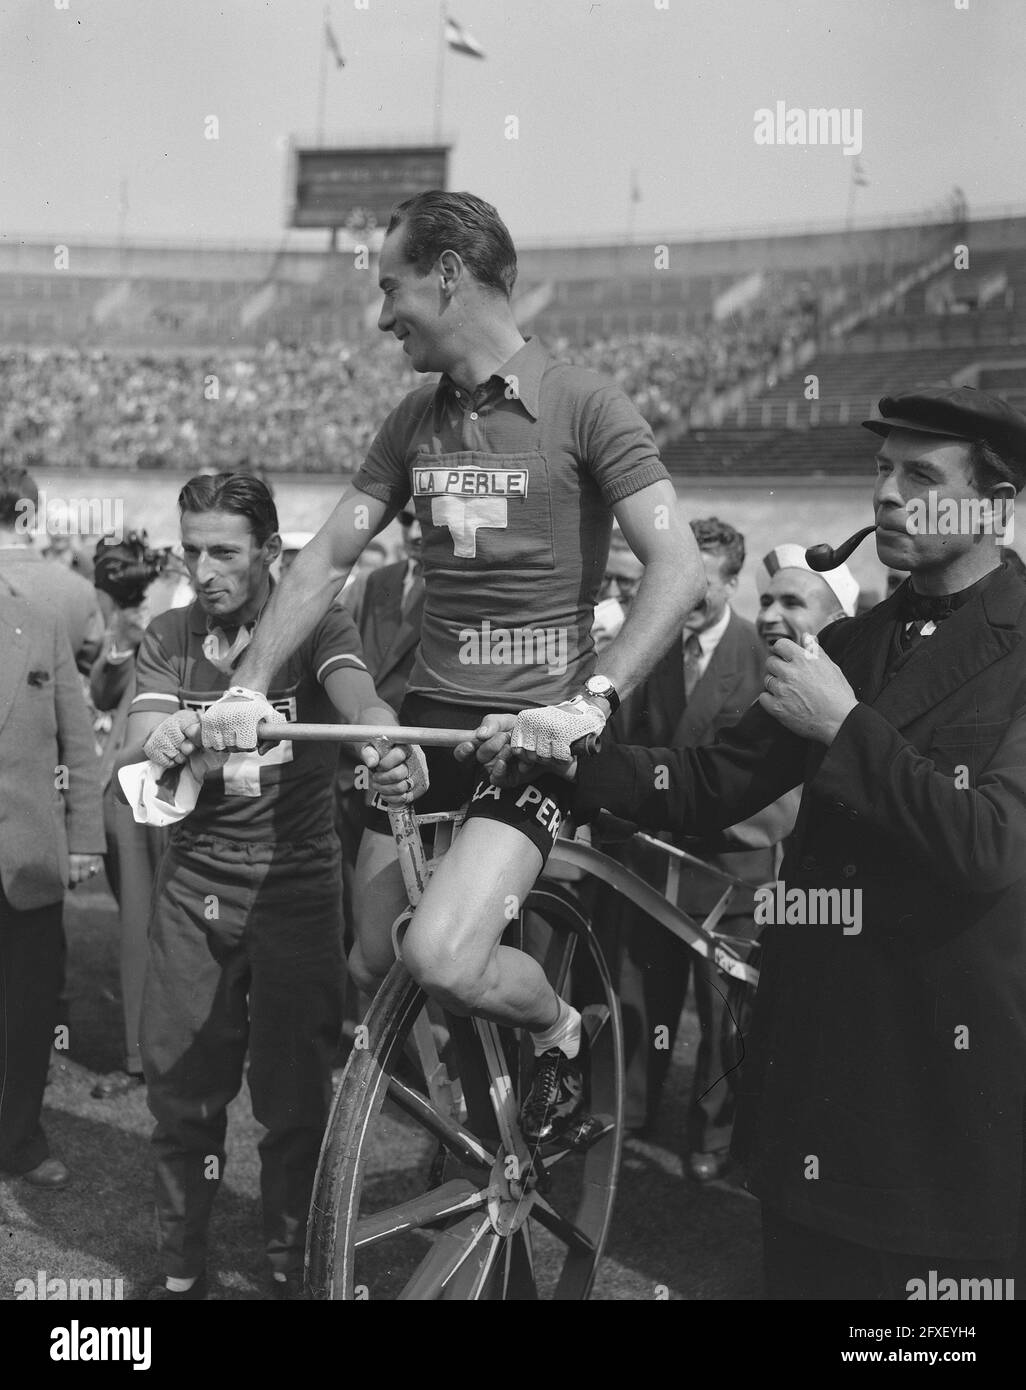 Tour de Francia, salida desde Amsterdam, Koblet en bicicleta holandesa  vieja, 8 de julio de 1954, deportes, carreras de bicicletas, Países Bajos,  agencia de prensa del siglo 20th foto, noticias para recordar,